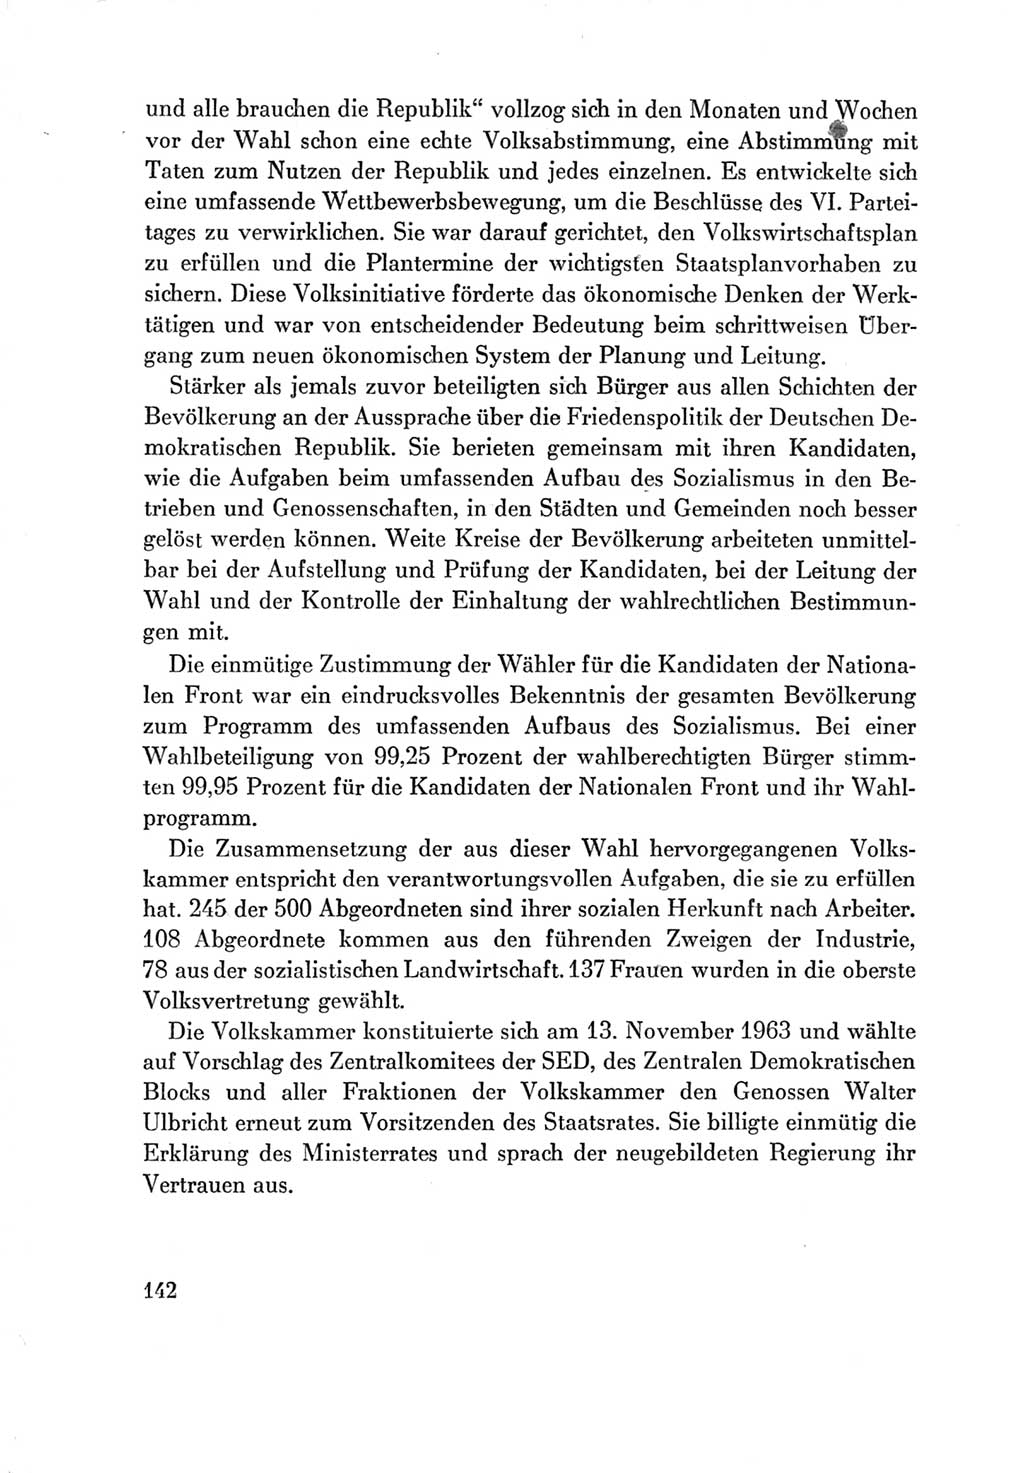 Protokoll der Verhandlungen des Ⅶ. Parteitages der Sozialistischen Einheitspartei Deutschlands (SED) [Deutsche Demokratische Republik (DDR)] 1967, Band Ⅳ, Seite 142 (Prot. Verh. Ⅶ. PT SED DDR 1967, Bd. Ⅳ, S. 142)